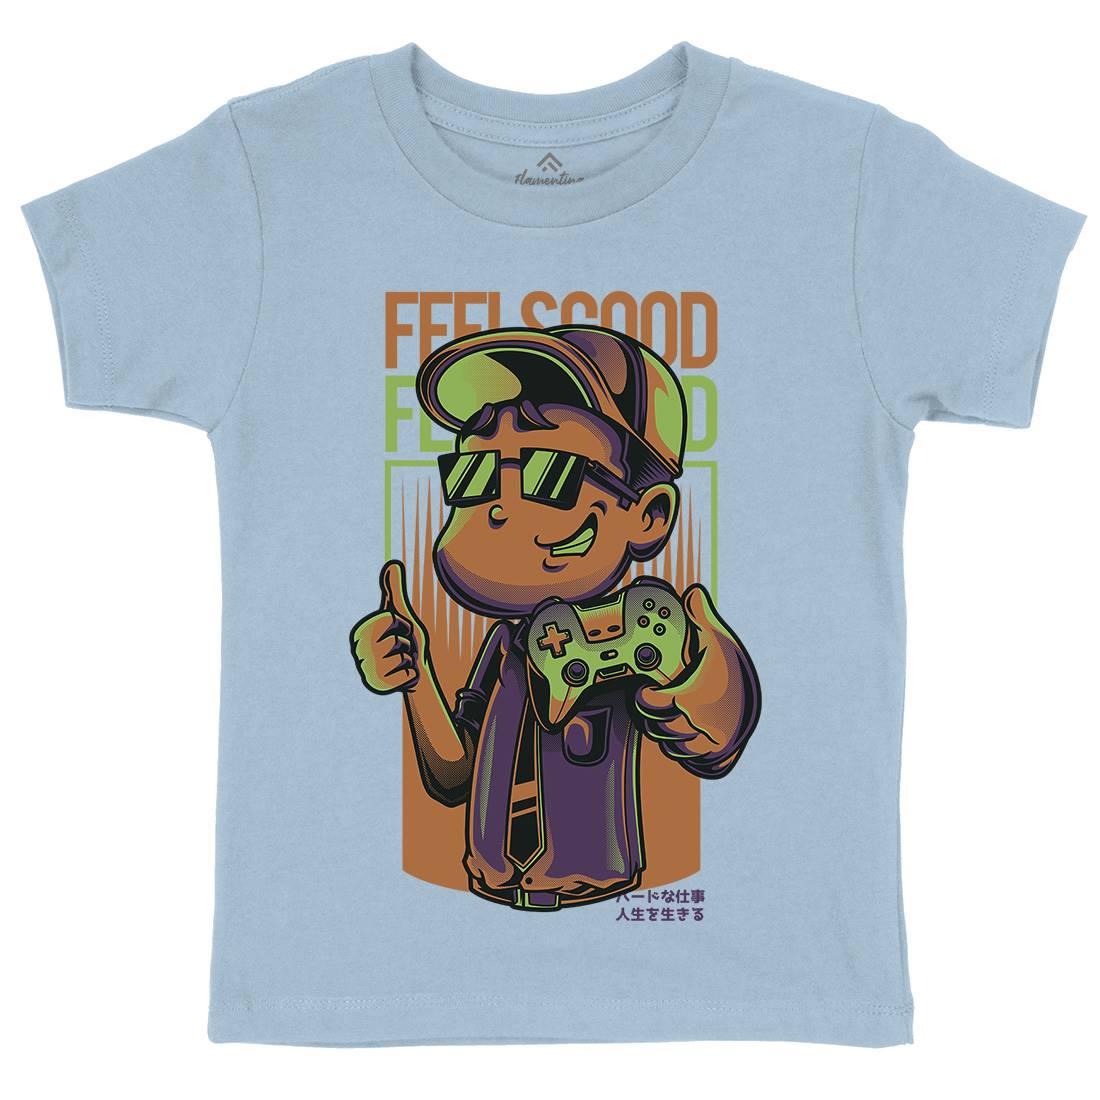 Feels Good Kids Organic Crew Neck T-Shirt Geek D773